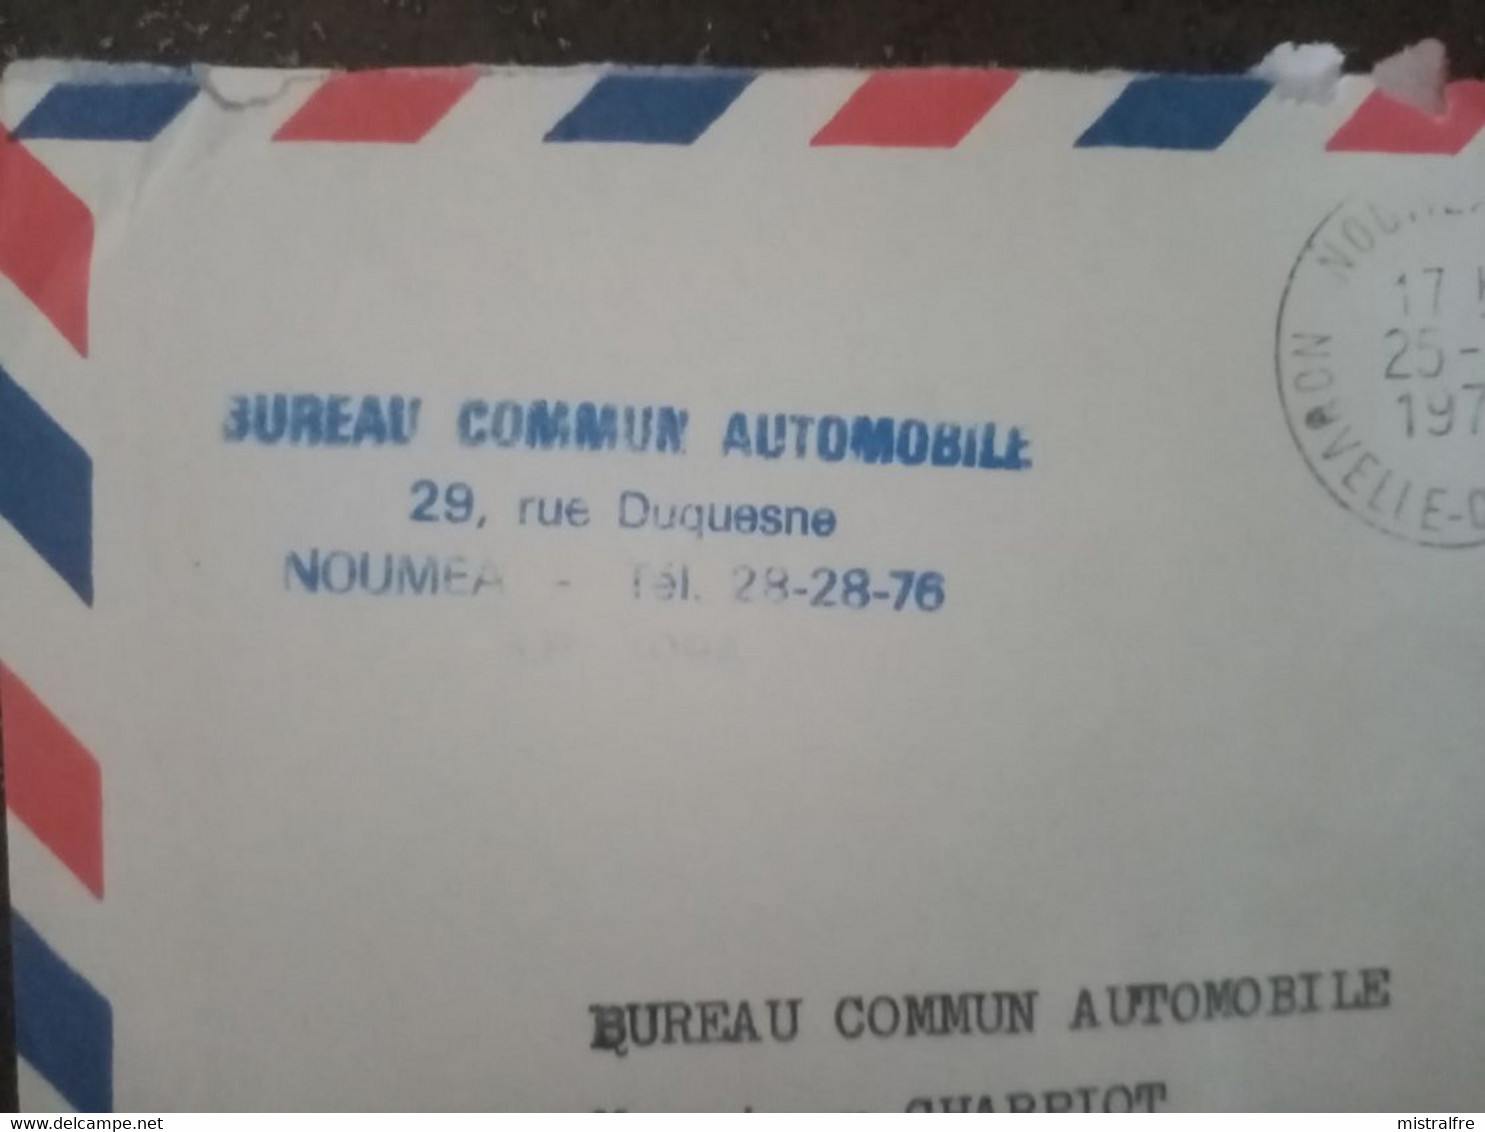 NOUVELLE-CALEDONIE. 1977. Lettre PAR AVION NOUMEA - CLICHY Du BUREAU COMMUN AUTOMOBILE - Covers & Documents